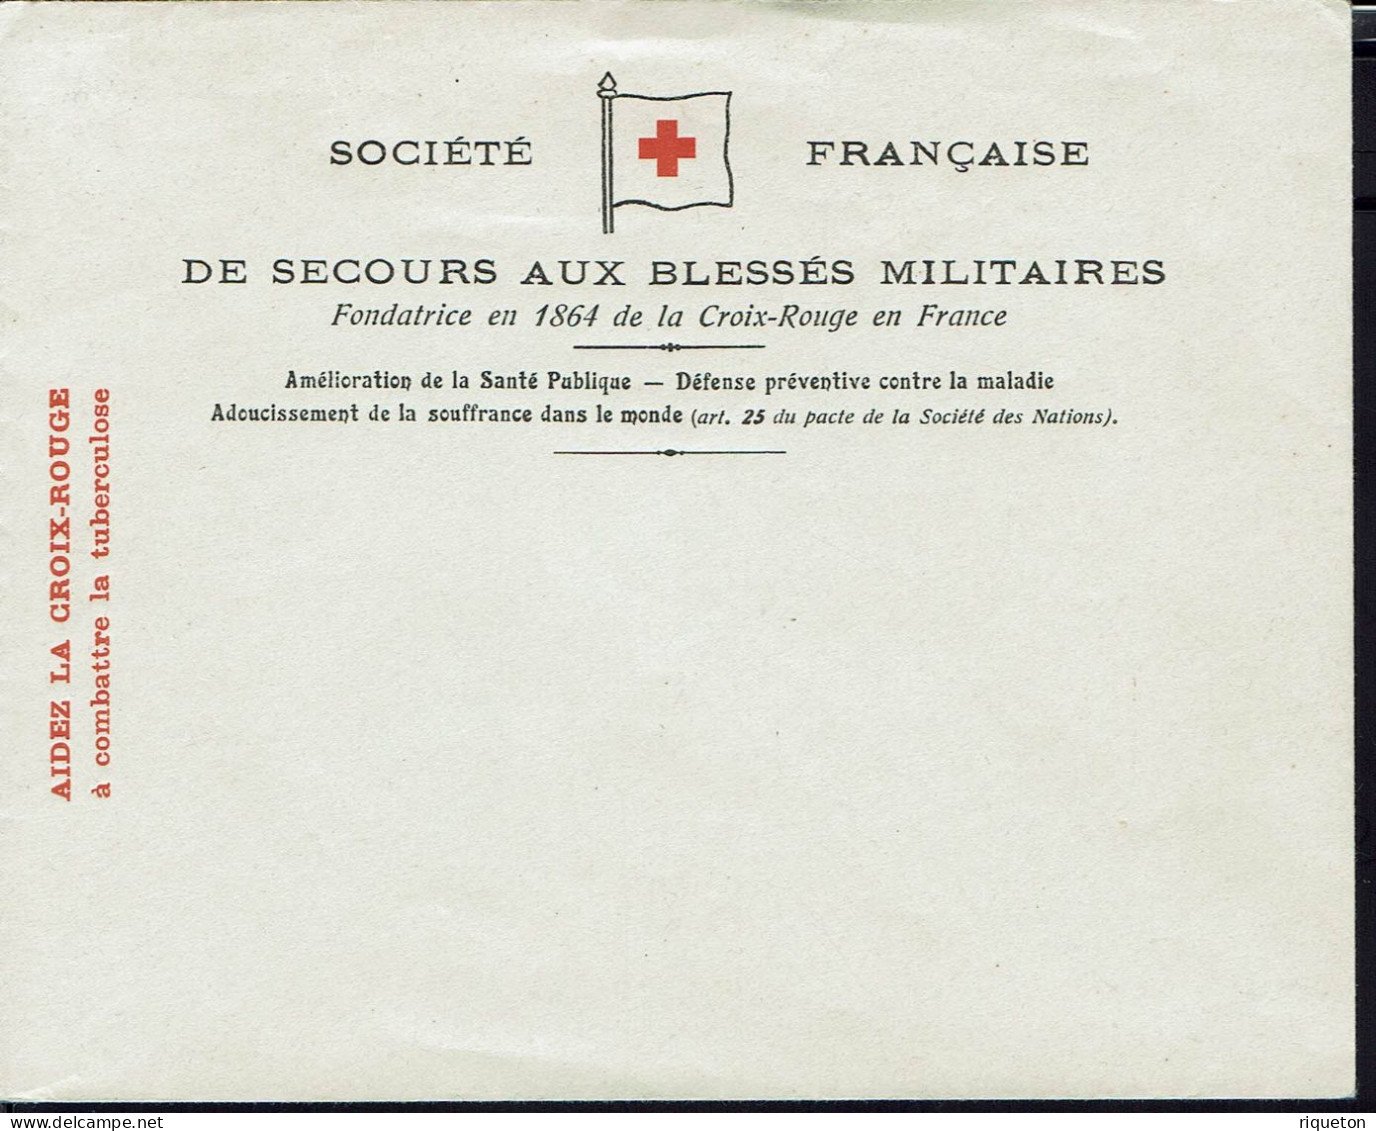 France. Enveloppe Neuve Société Française Croix Rouge, Secours Aux Blessés. Aide à Combattre La Tuberculose. - Red Cross